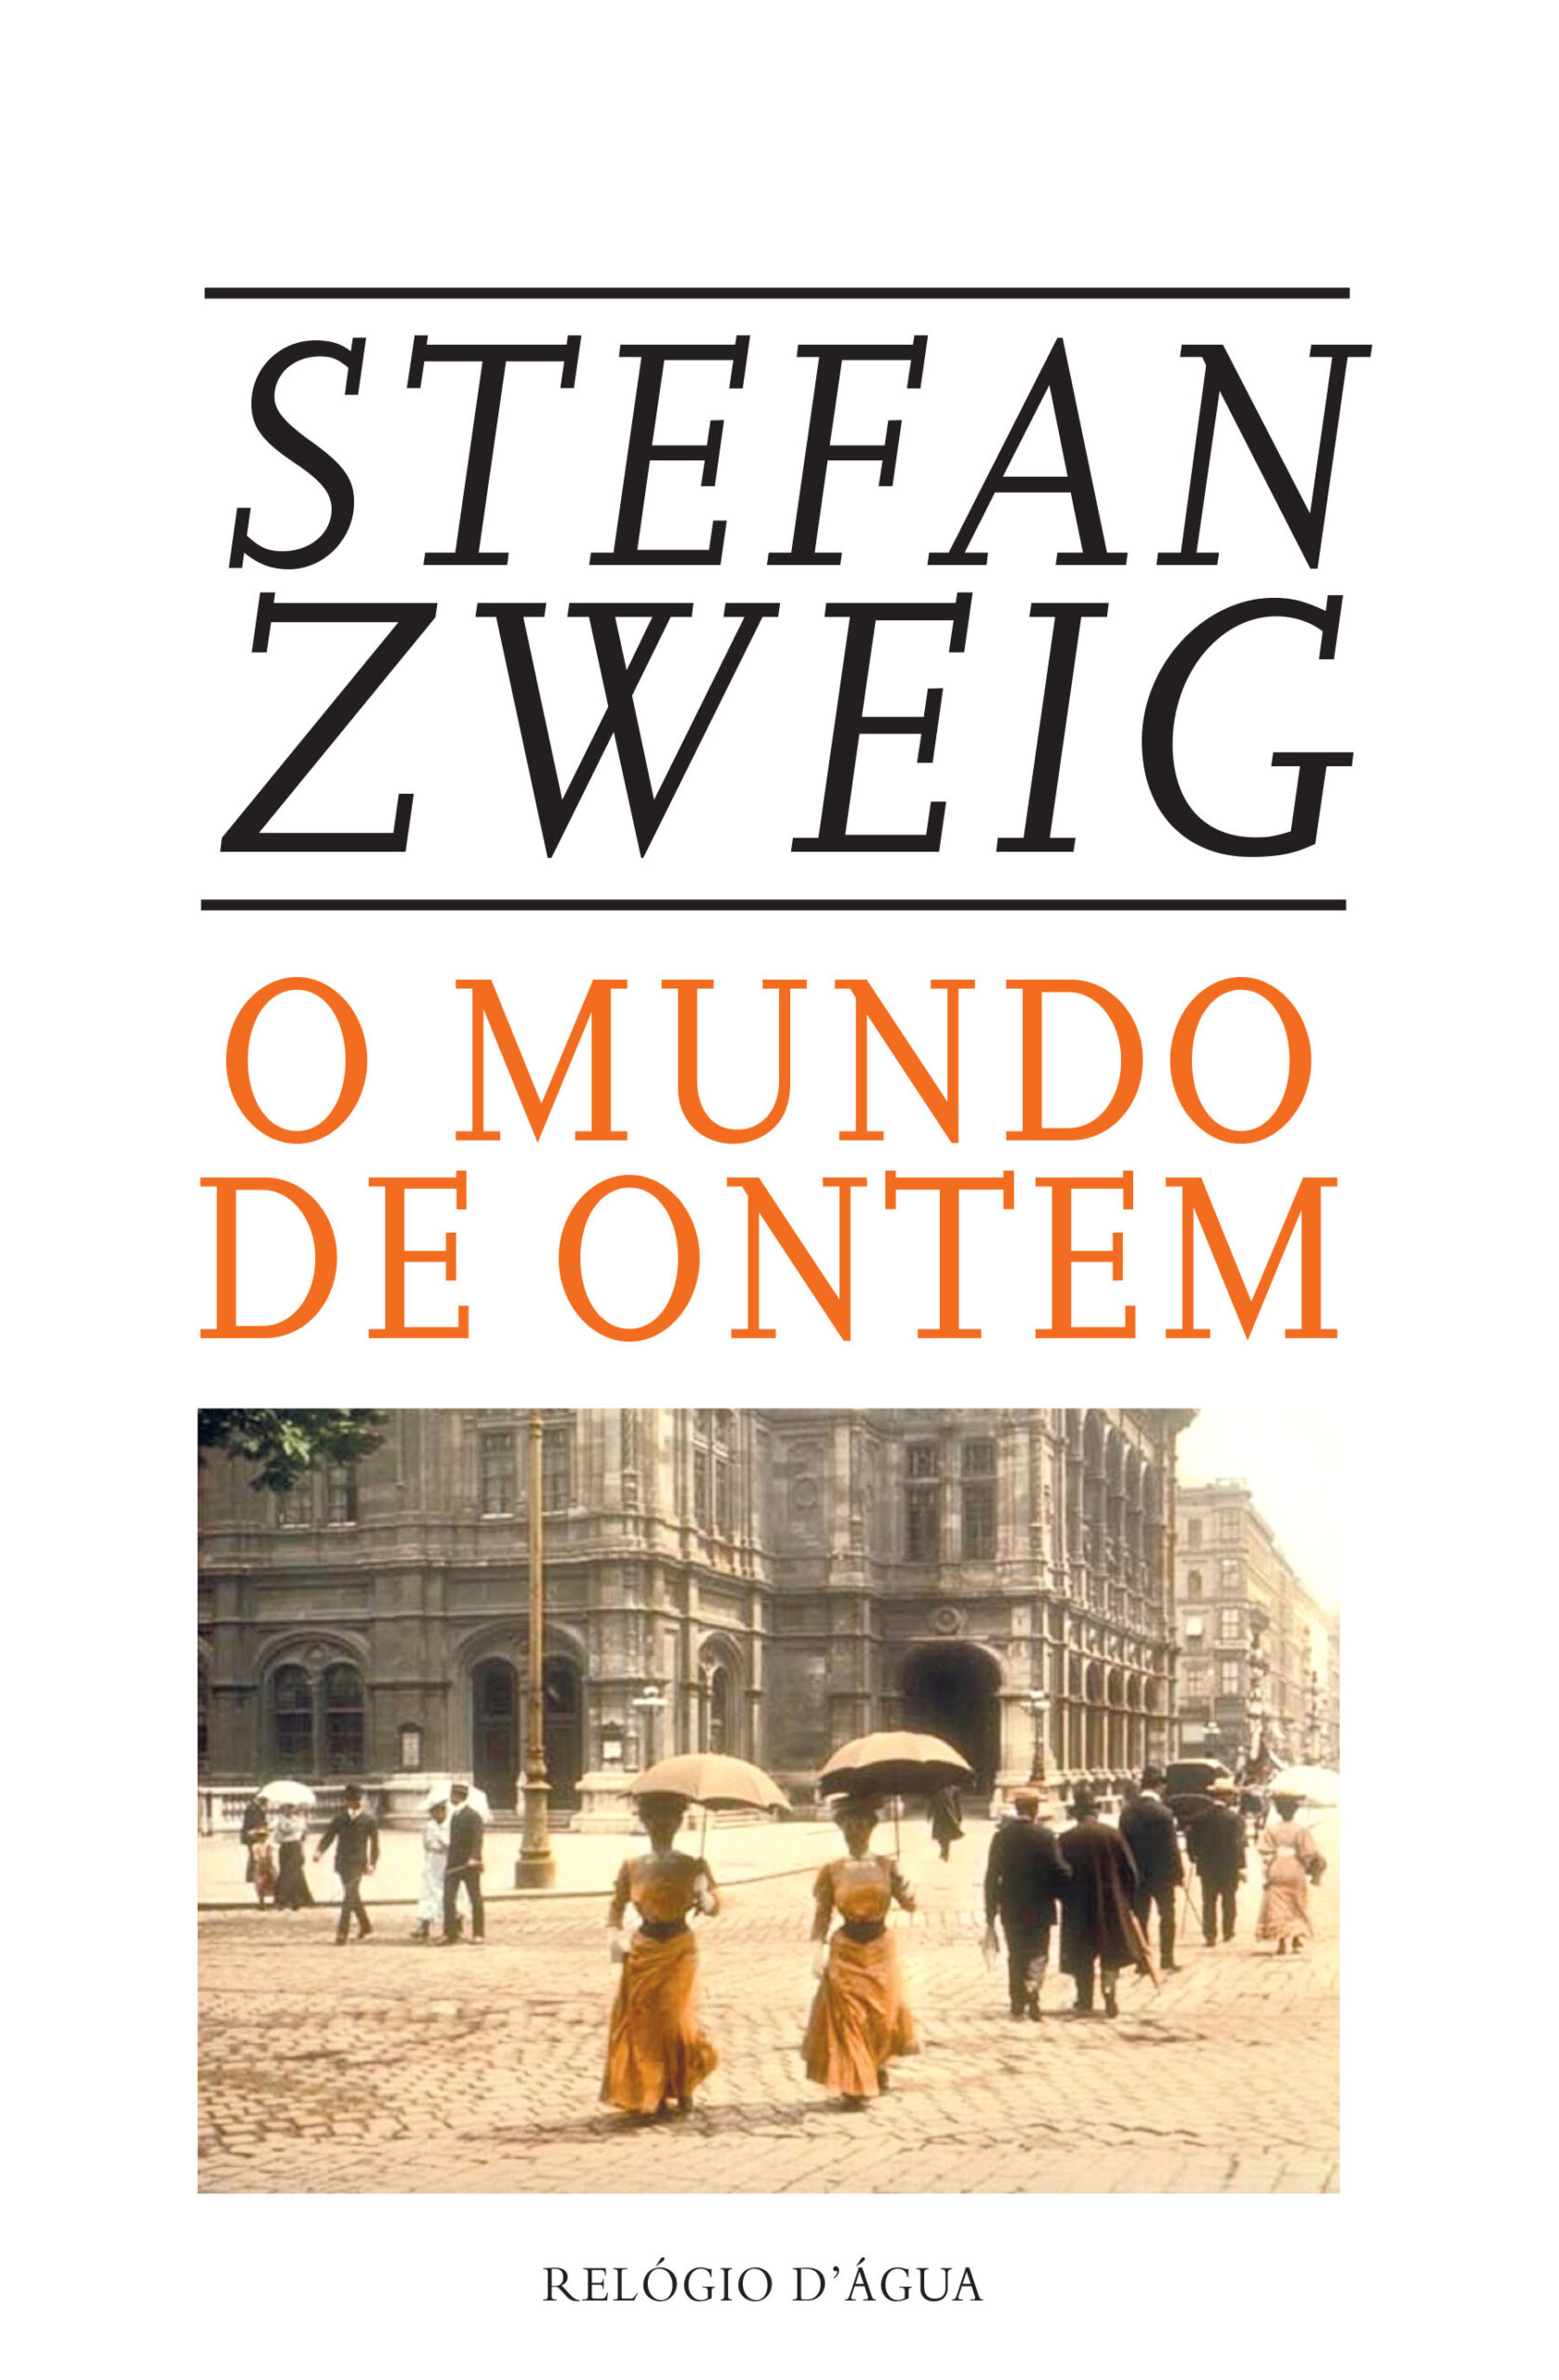 O LIVRO DO XADREZ - Stefan Zweig., PDF, Xadrez